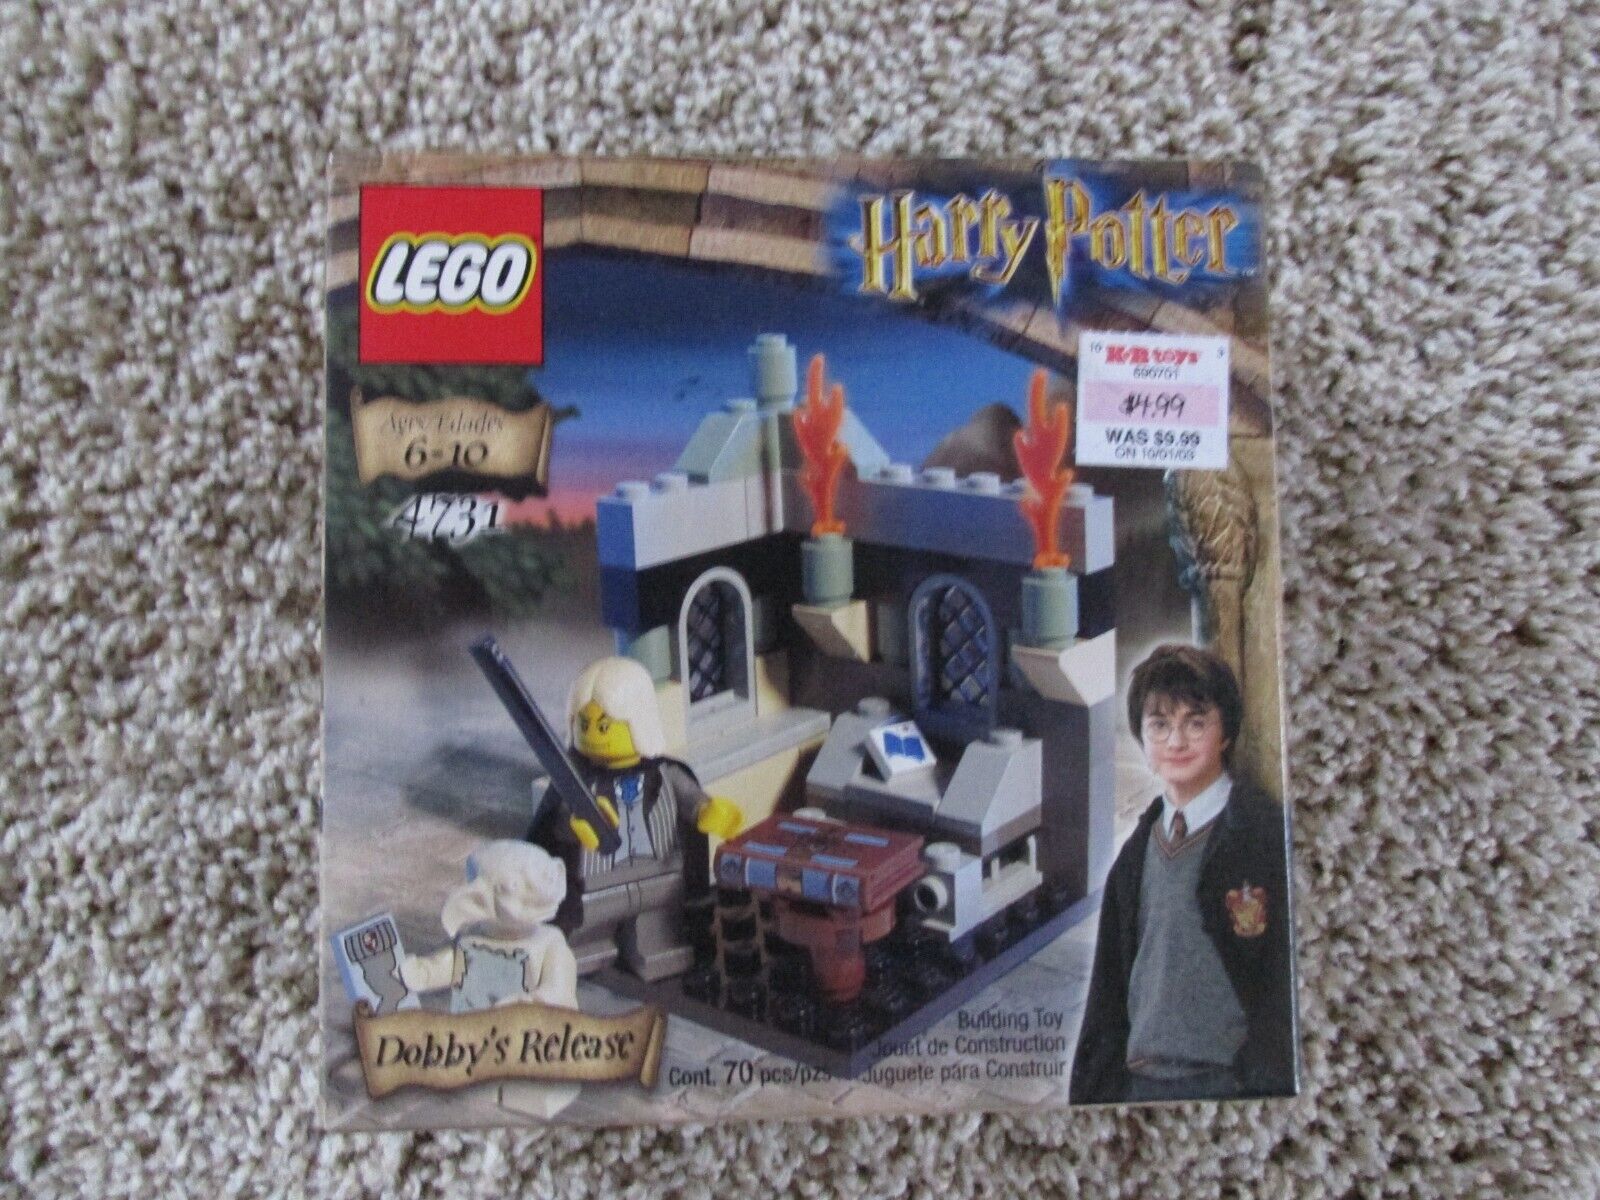 NISB LEGO Harry Potter Chamber of Secrets Dobby's Release (4731)